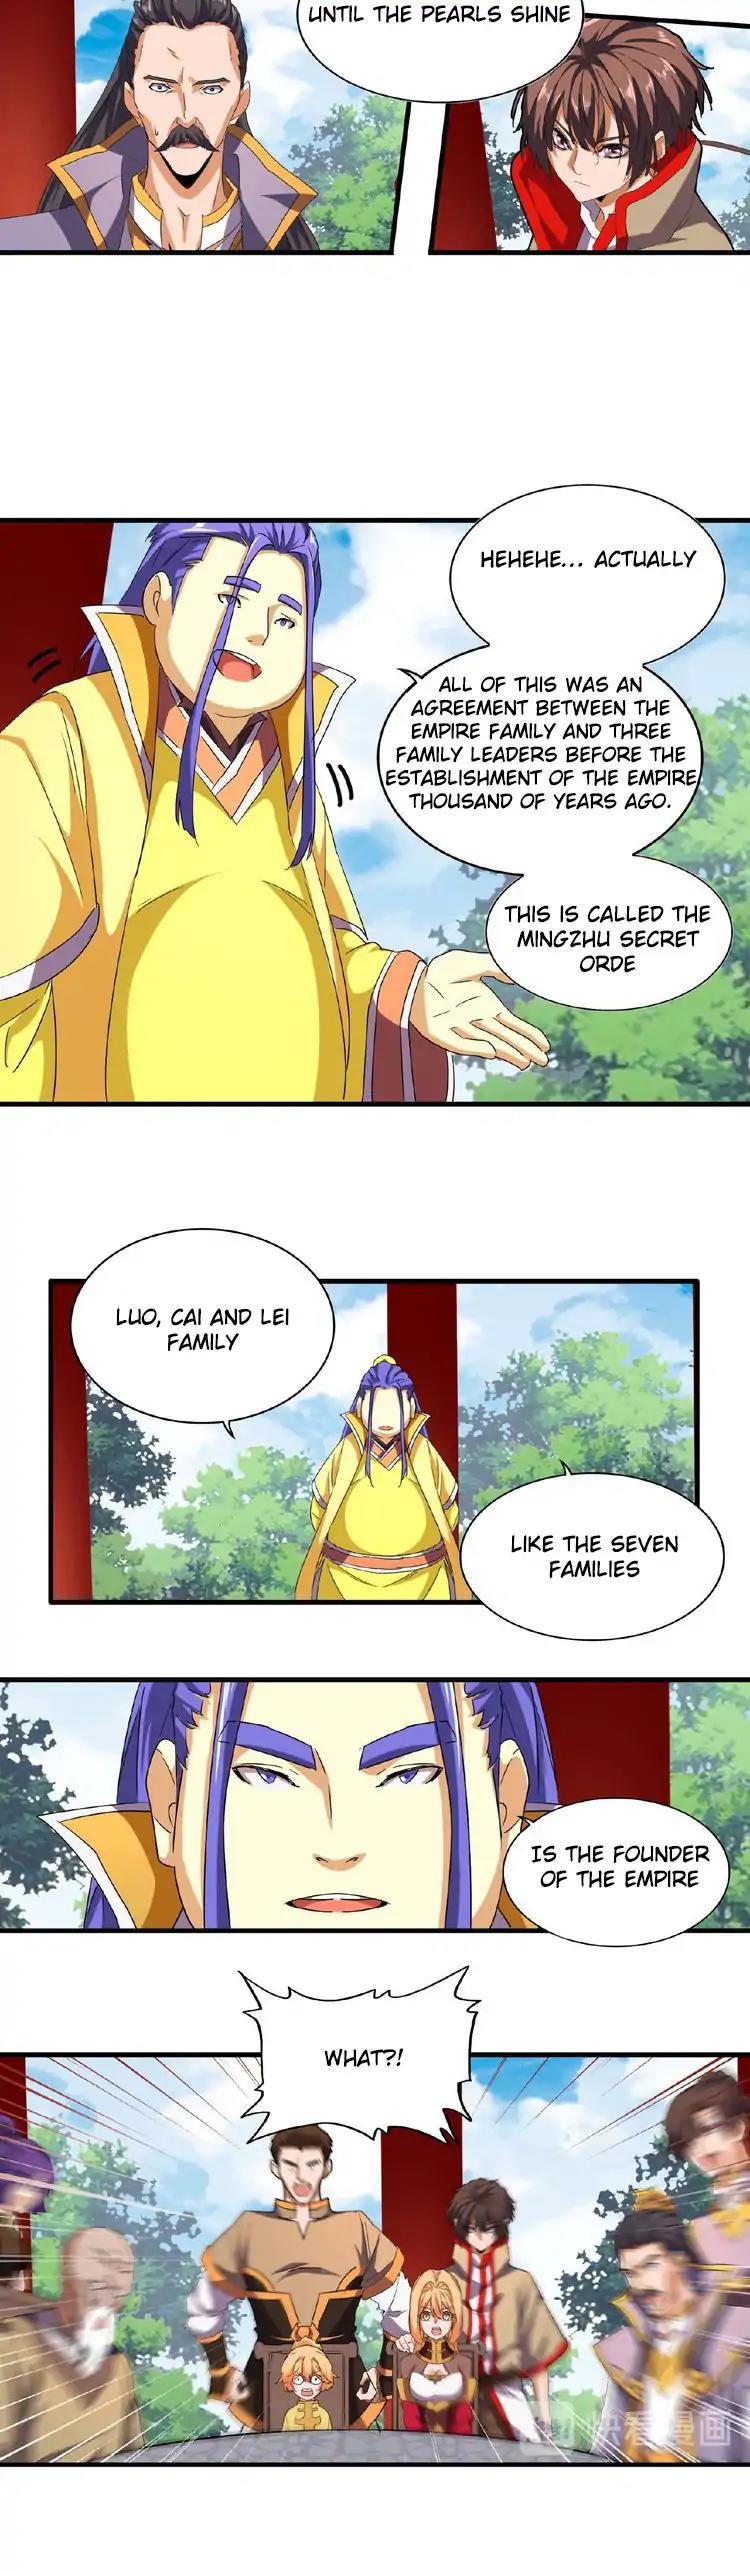 Magic Emperor Chapter 42 page 10 - Mangakakalot